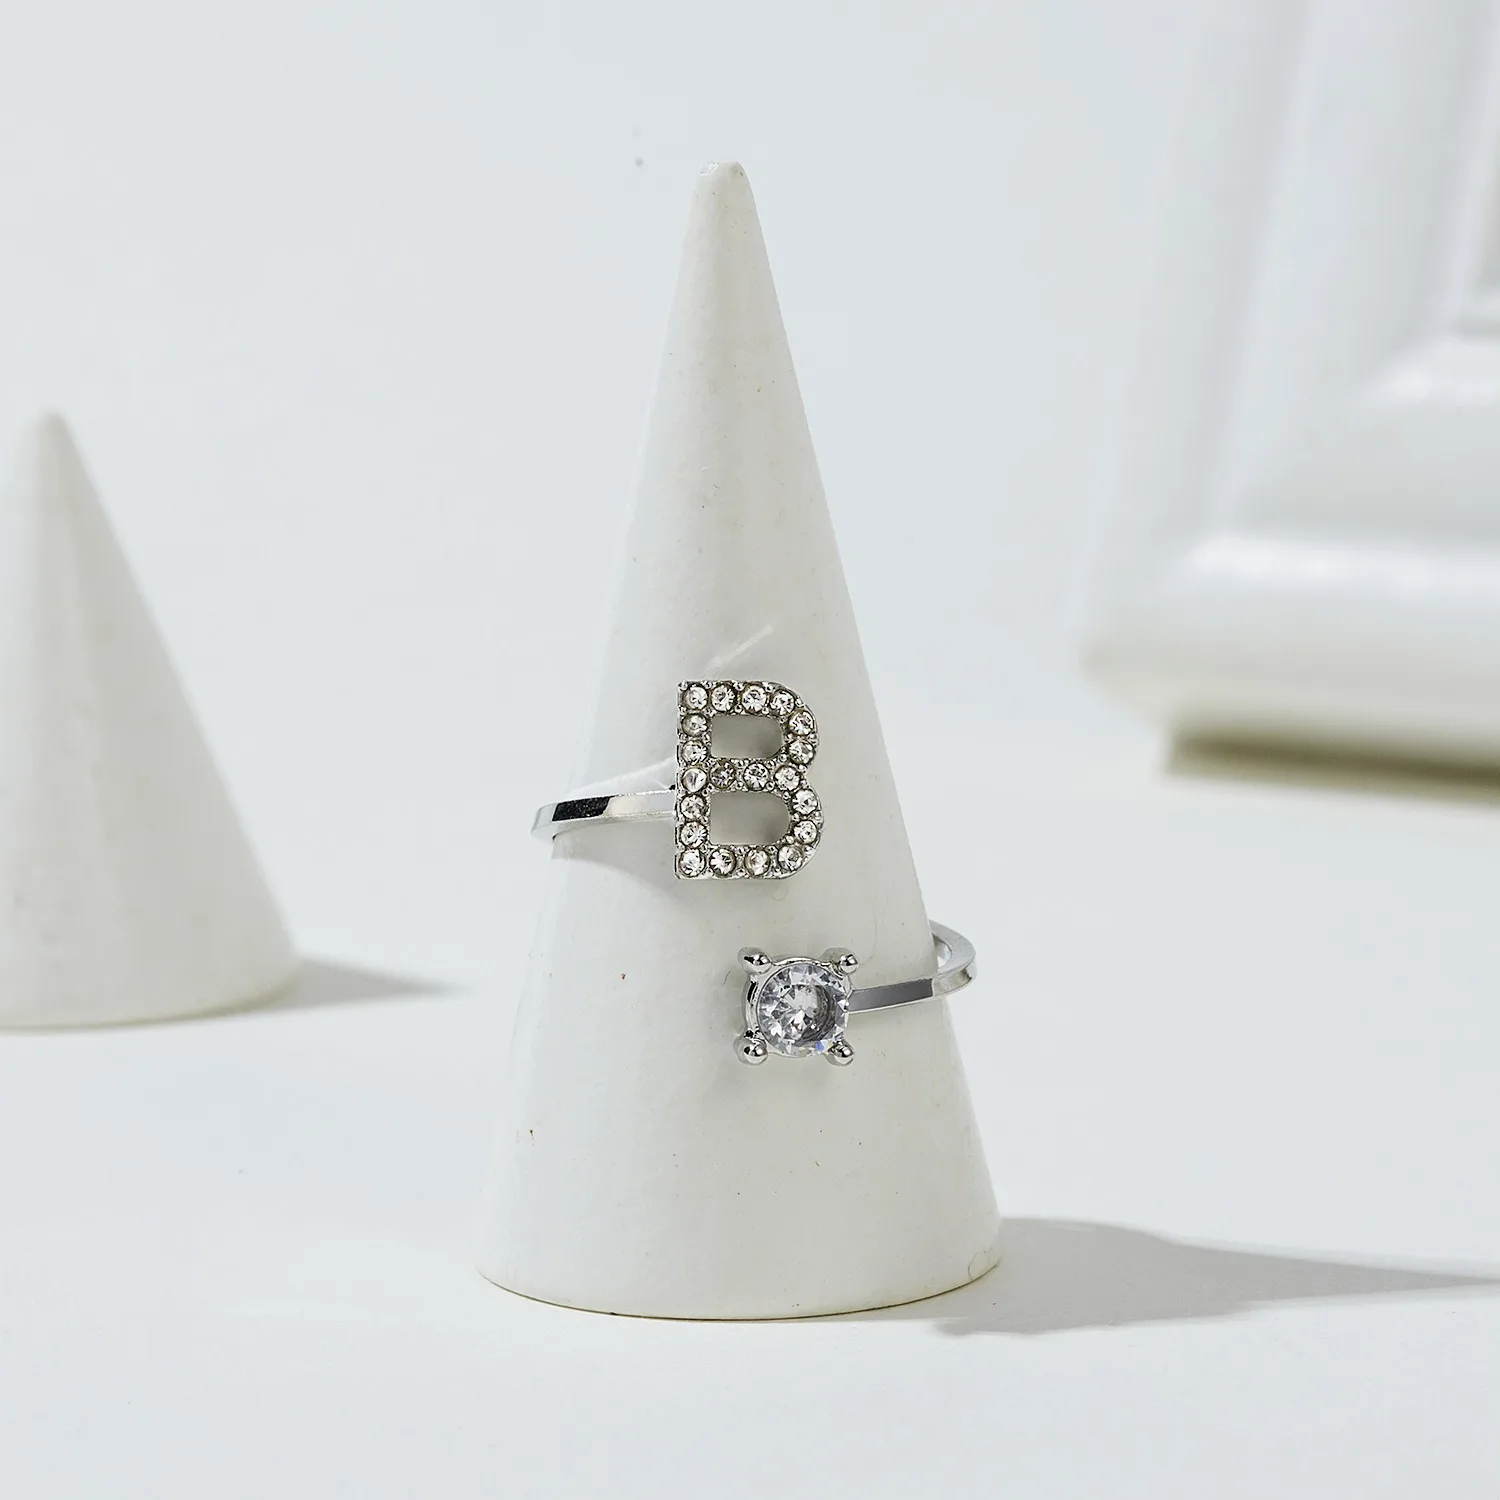 Модное кольцо ручной работы с 26 английскими буквами A-Z для женщин и девочек, серебряное кольцо с кристаллами и стразами, Открытое кольцо с буквами, ювелирное изделие, Прямая поставка